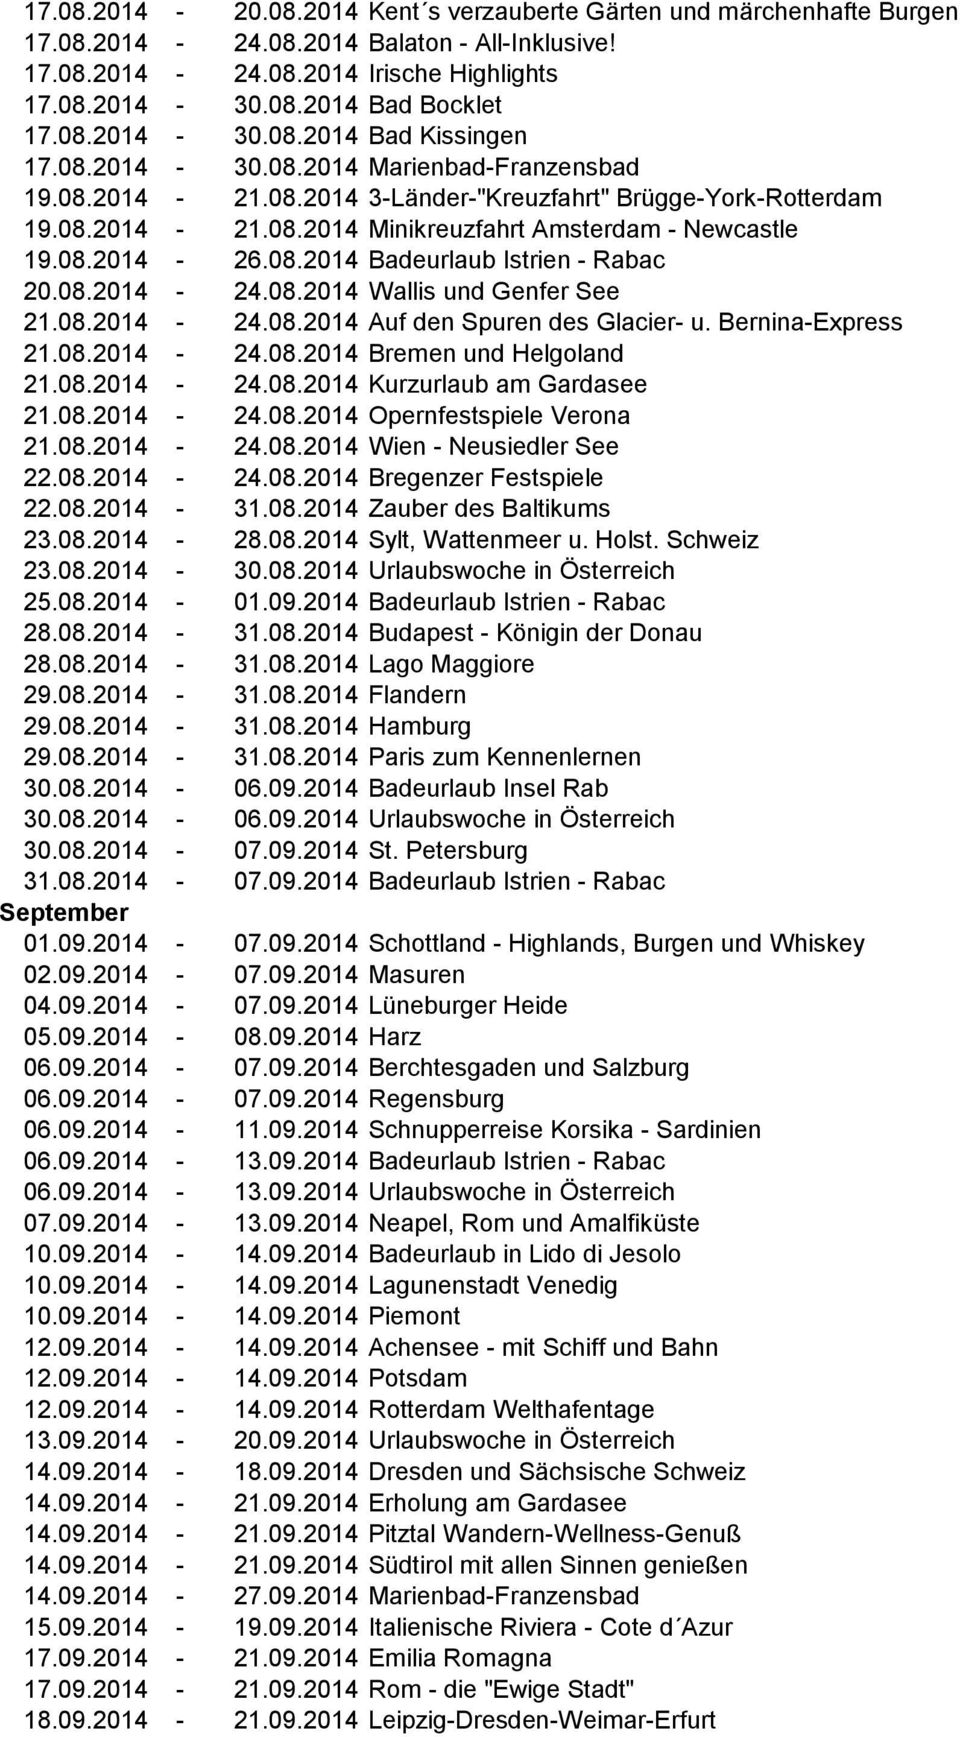 08.2014-24.08.2014 Wallis und Genfer See 21.08.2014-24.08.2014 Auf den Spuren des Glacier- u. Bernina-Express 21.08.2014-24.08.2014 Bremen und Helgoland 21.08.2014-24.08.2014 Kurzurlaub am Gardasee 21.